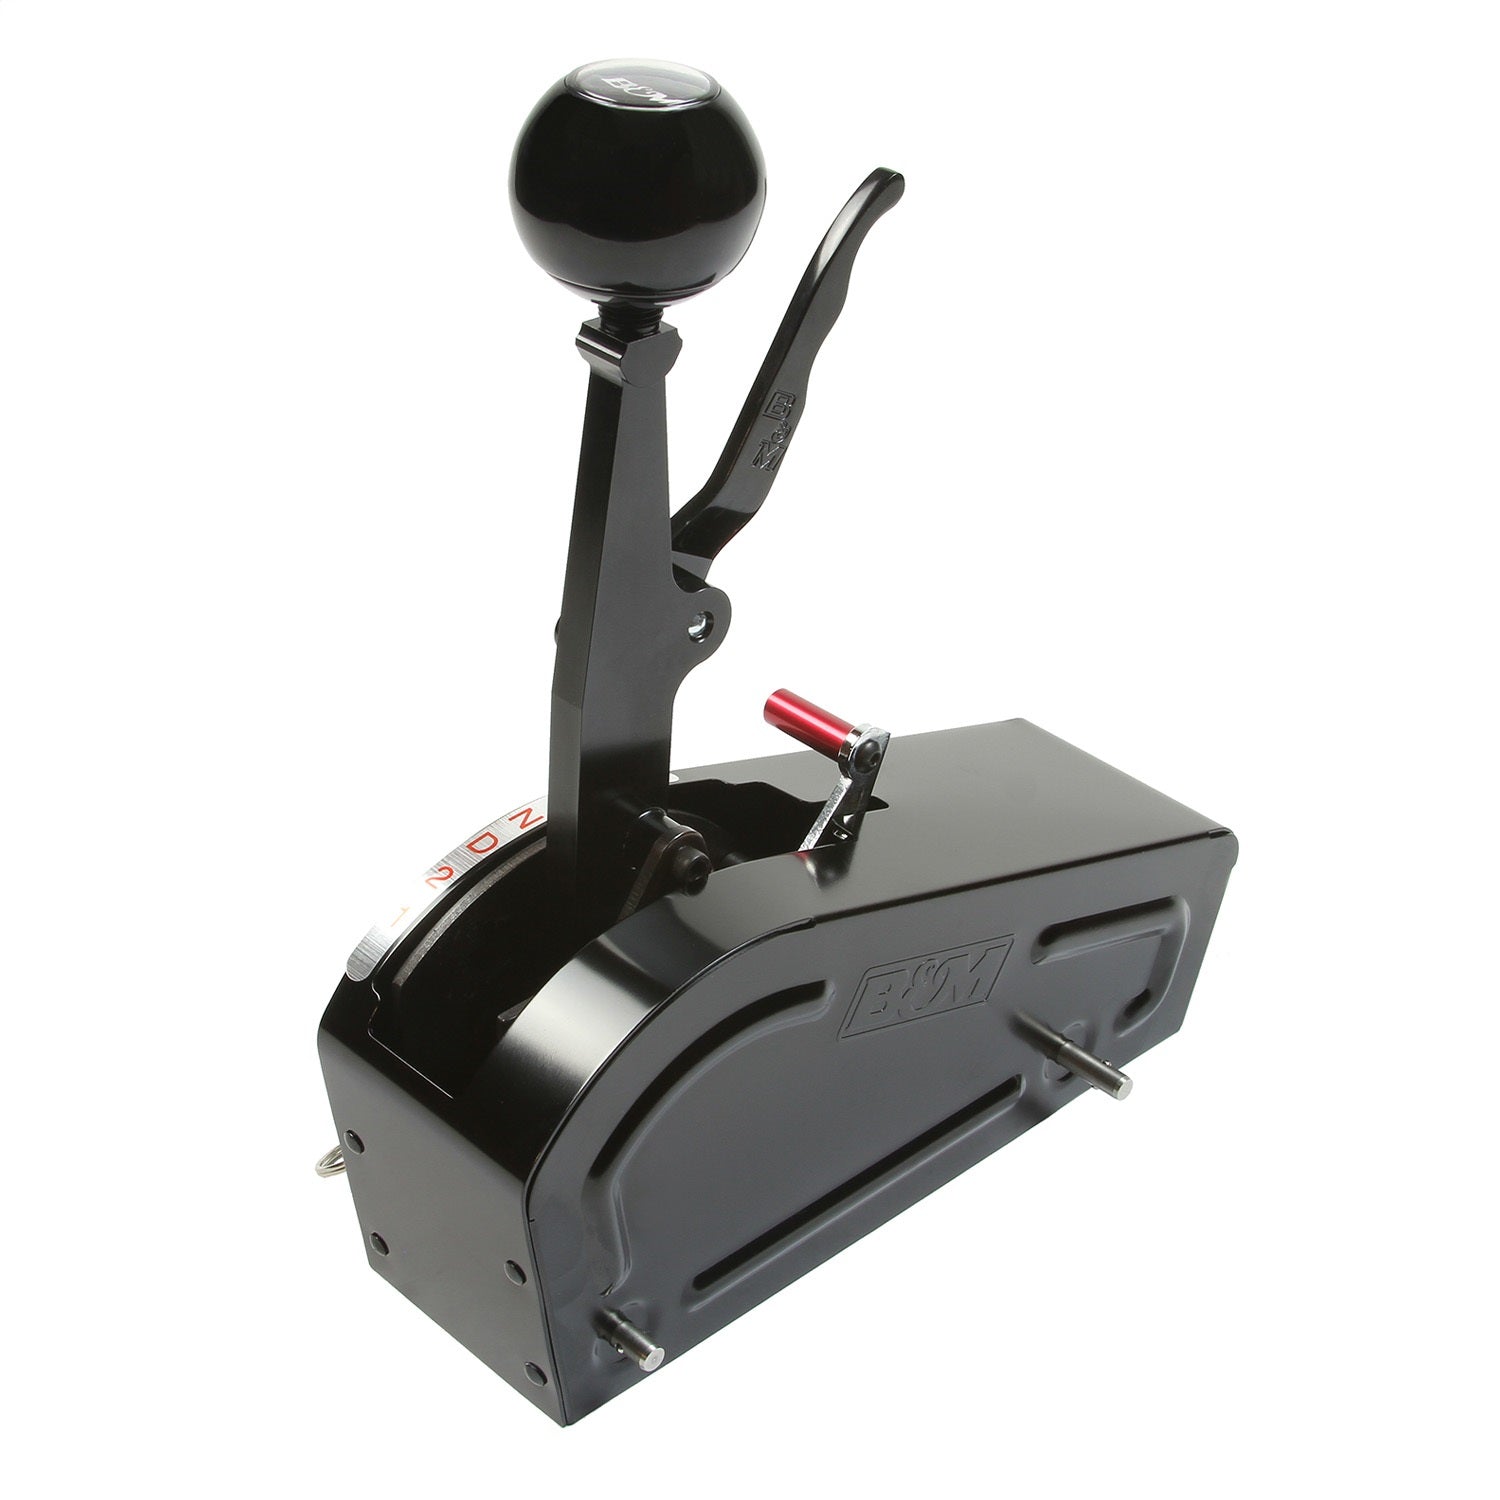 B&M 81706 Pro Stick Automatic Shifter